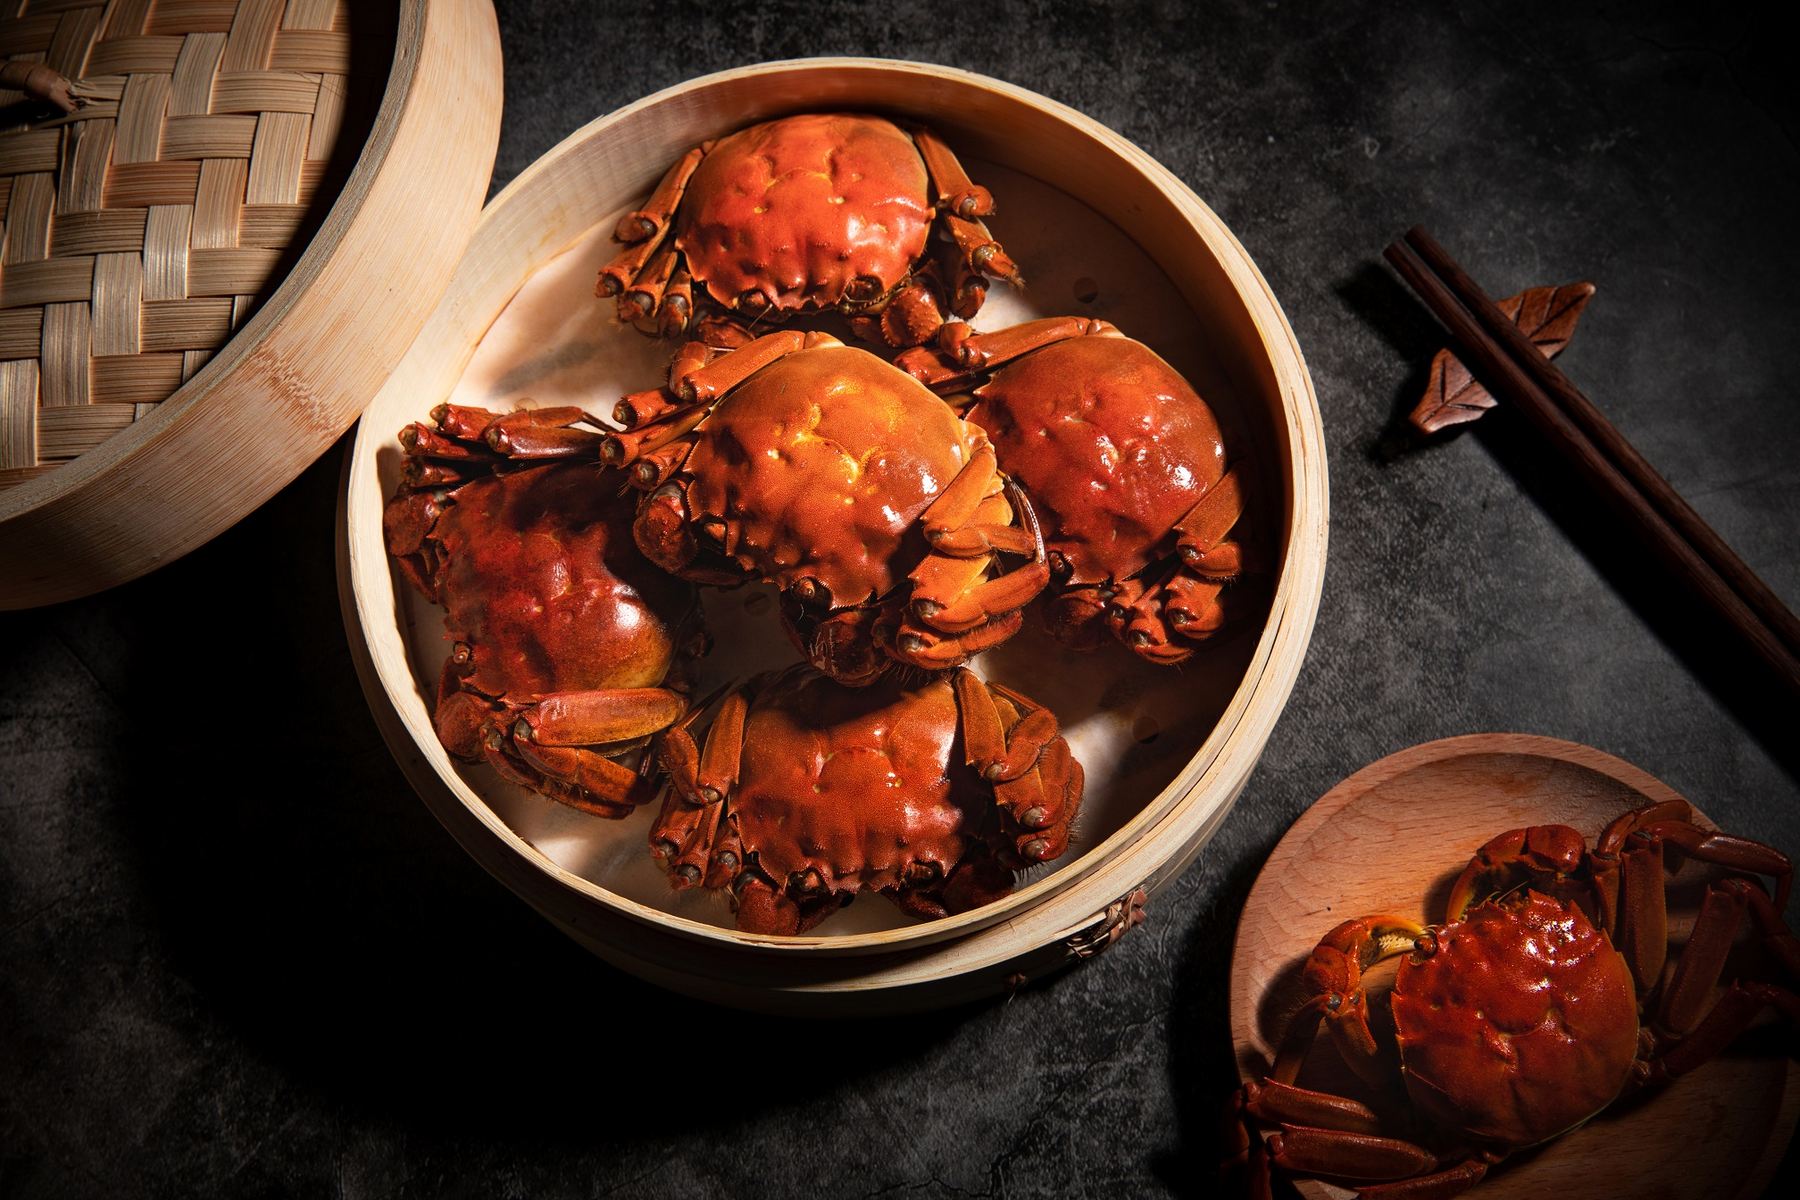 เปิดตำนานความอร่อย กับ “เทศกาลปูขน” ณ ห้องอาหารจีน หลิว - ลิ้มลองเมนูสุดพิเศษจากเชฟ 11-24 พฤศจิกายน นี้